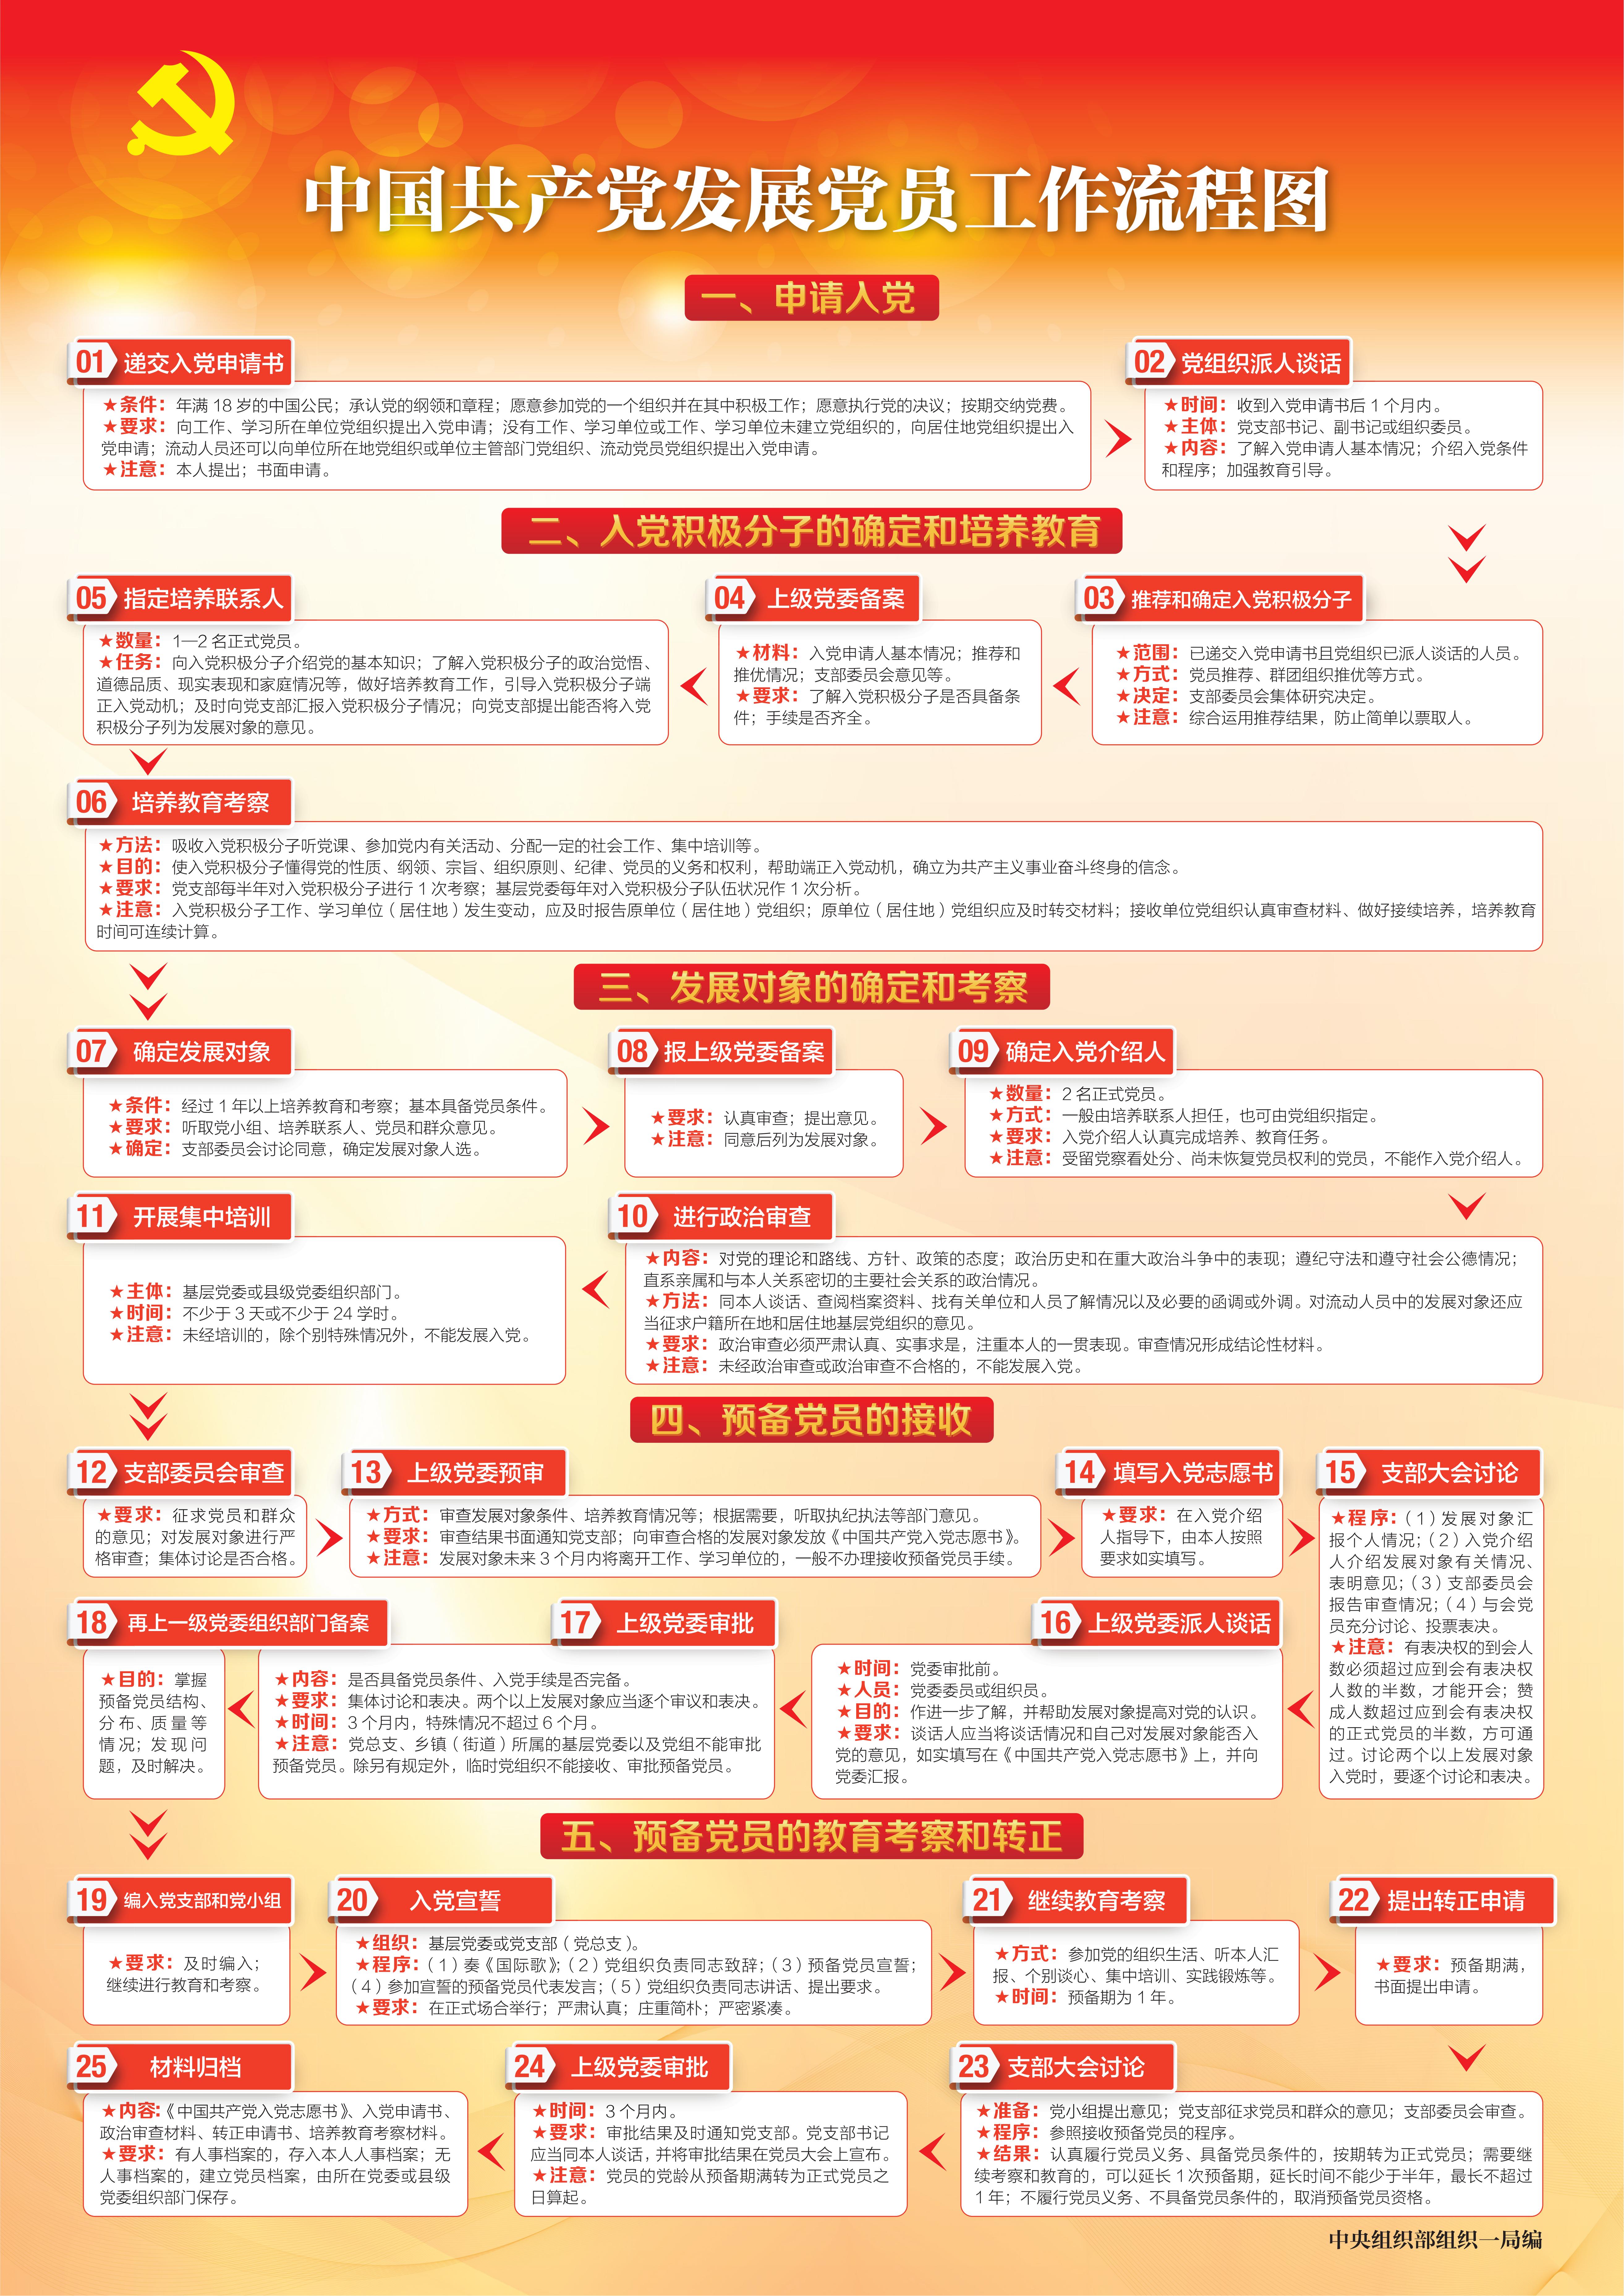 中国共产党发展党员工作流程图_00.jpg